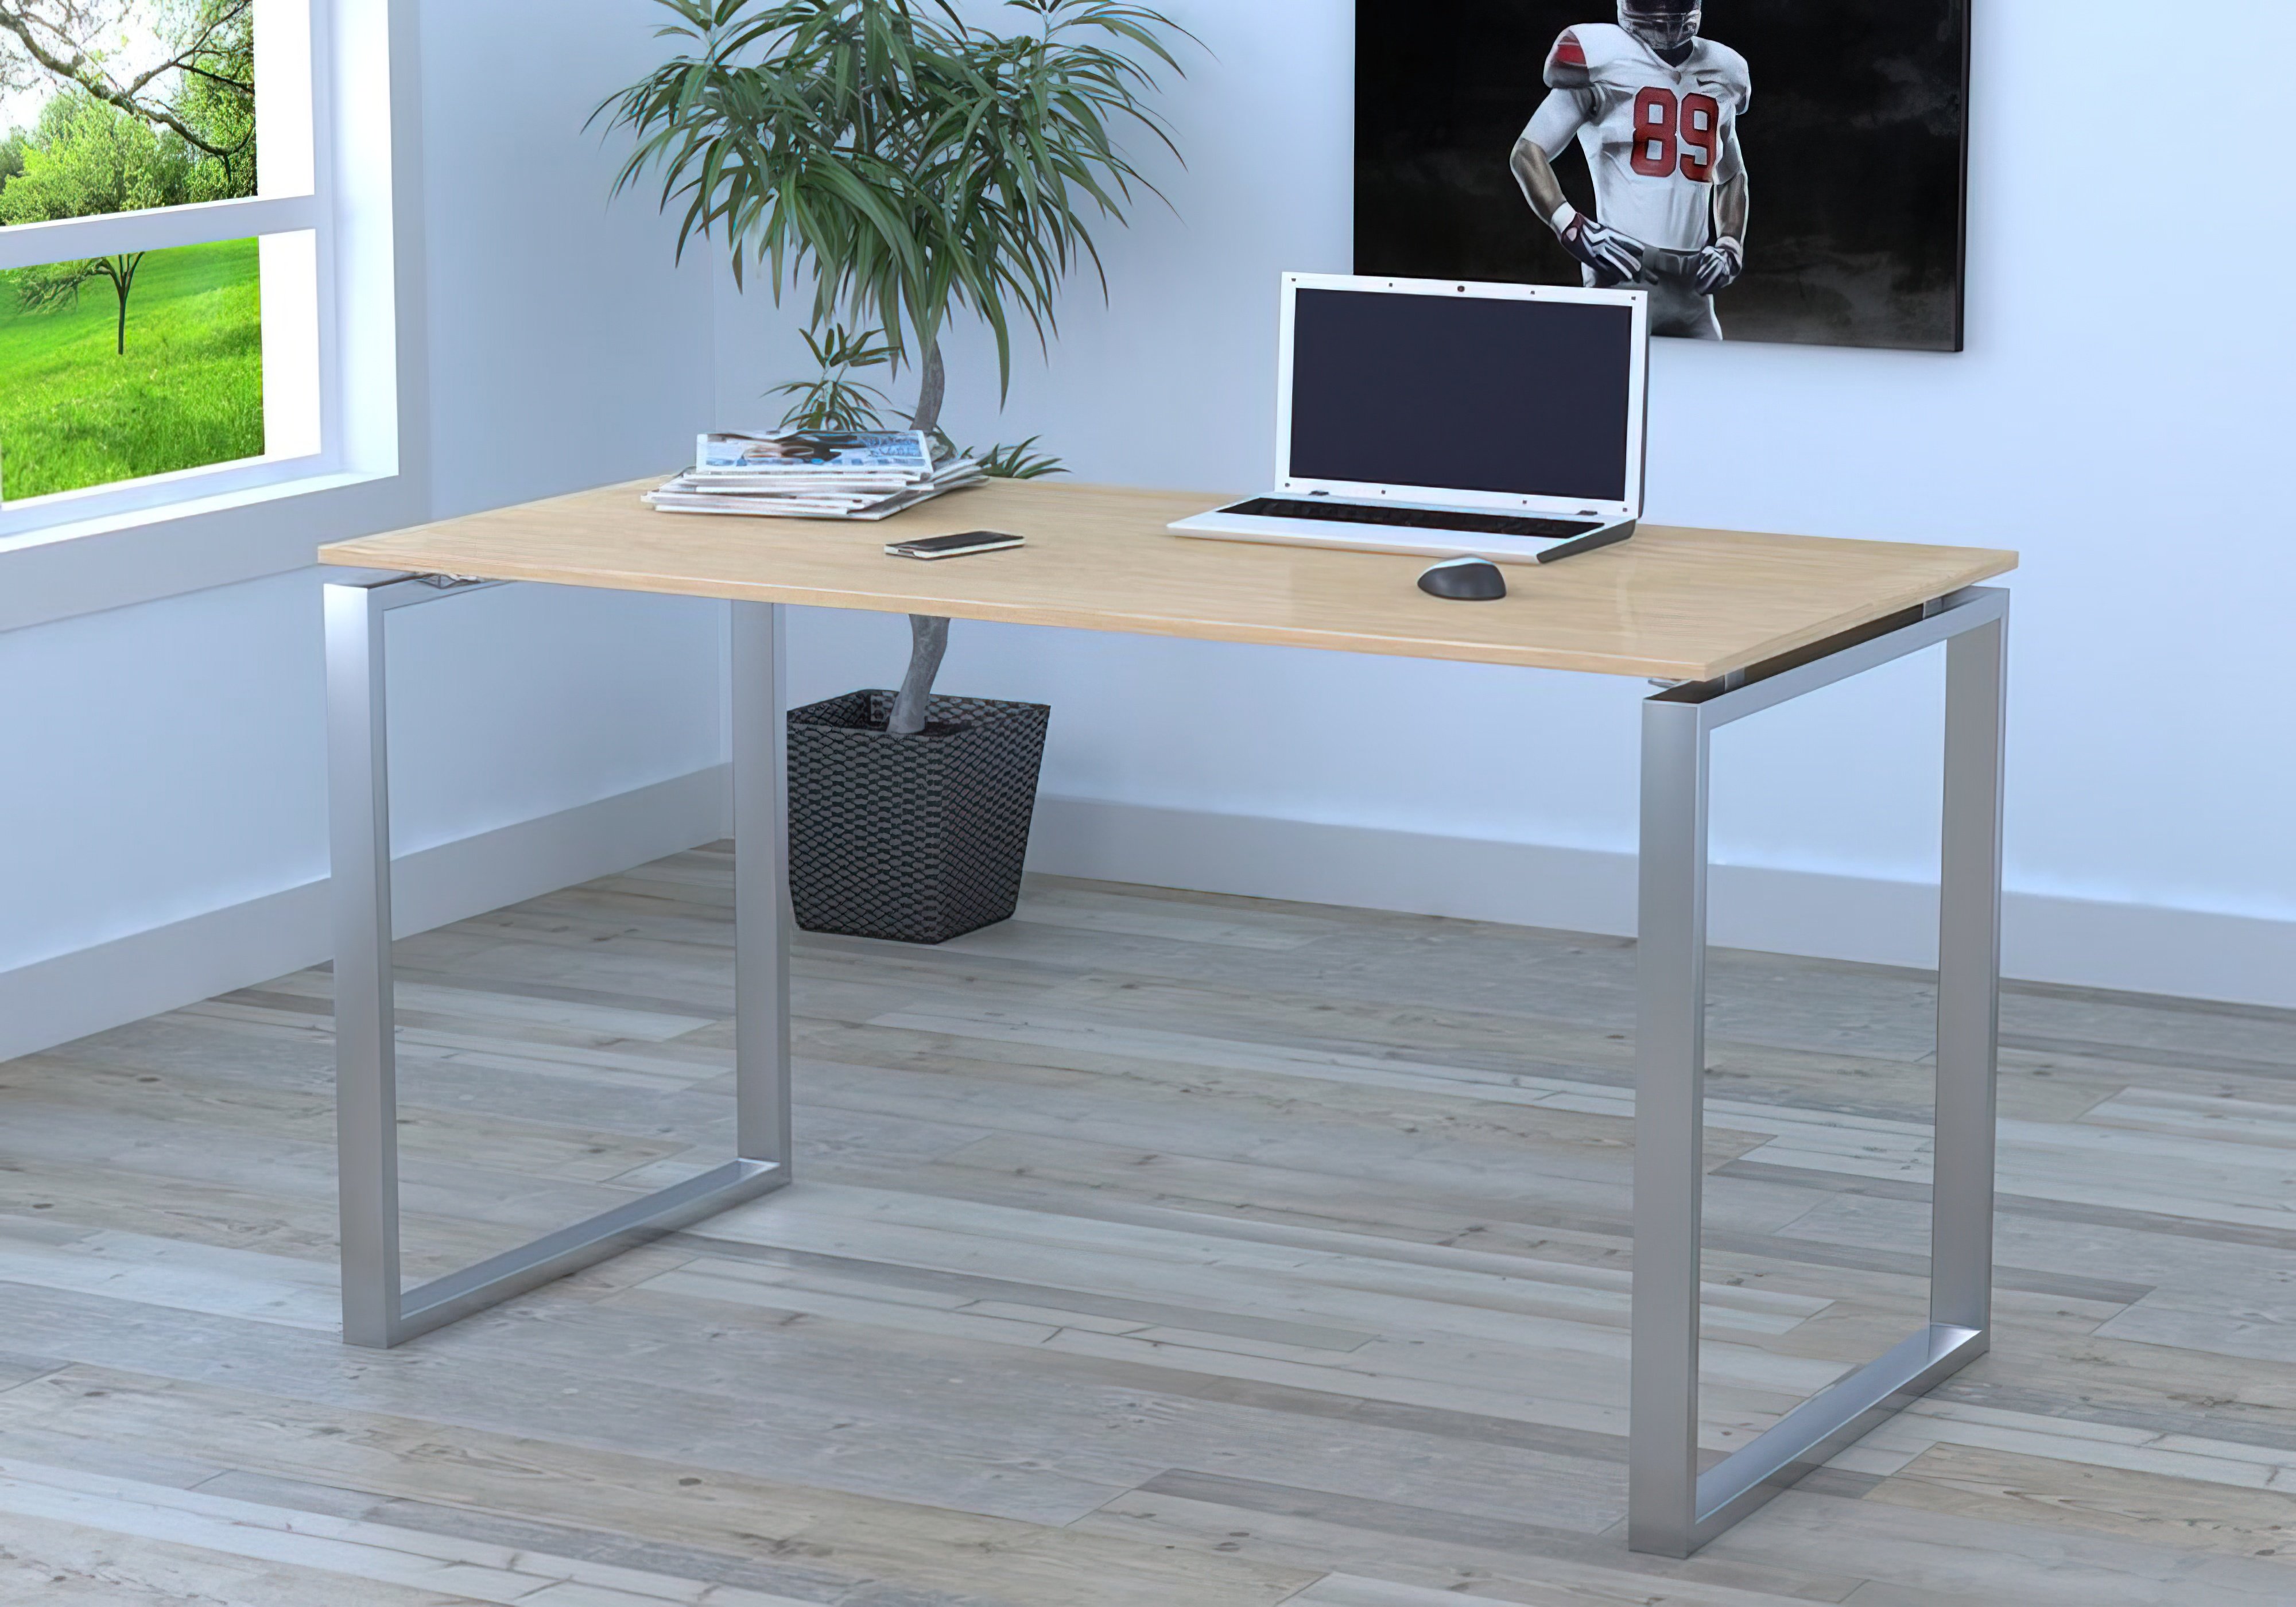  Купить Офисные столы Стол Q-135 без царги Loft Design